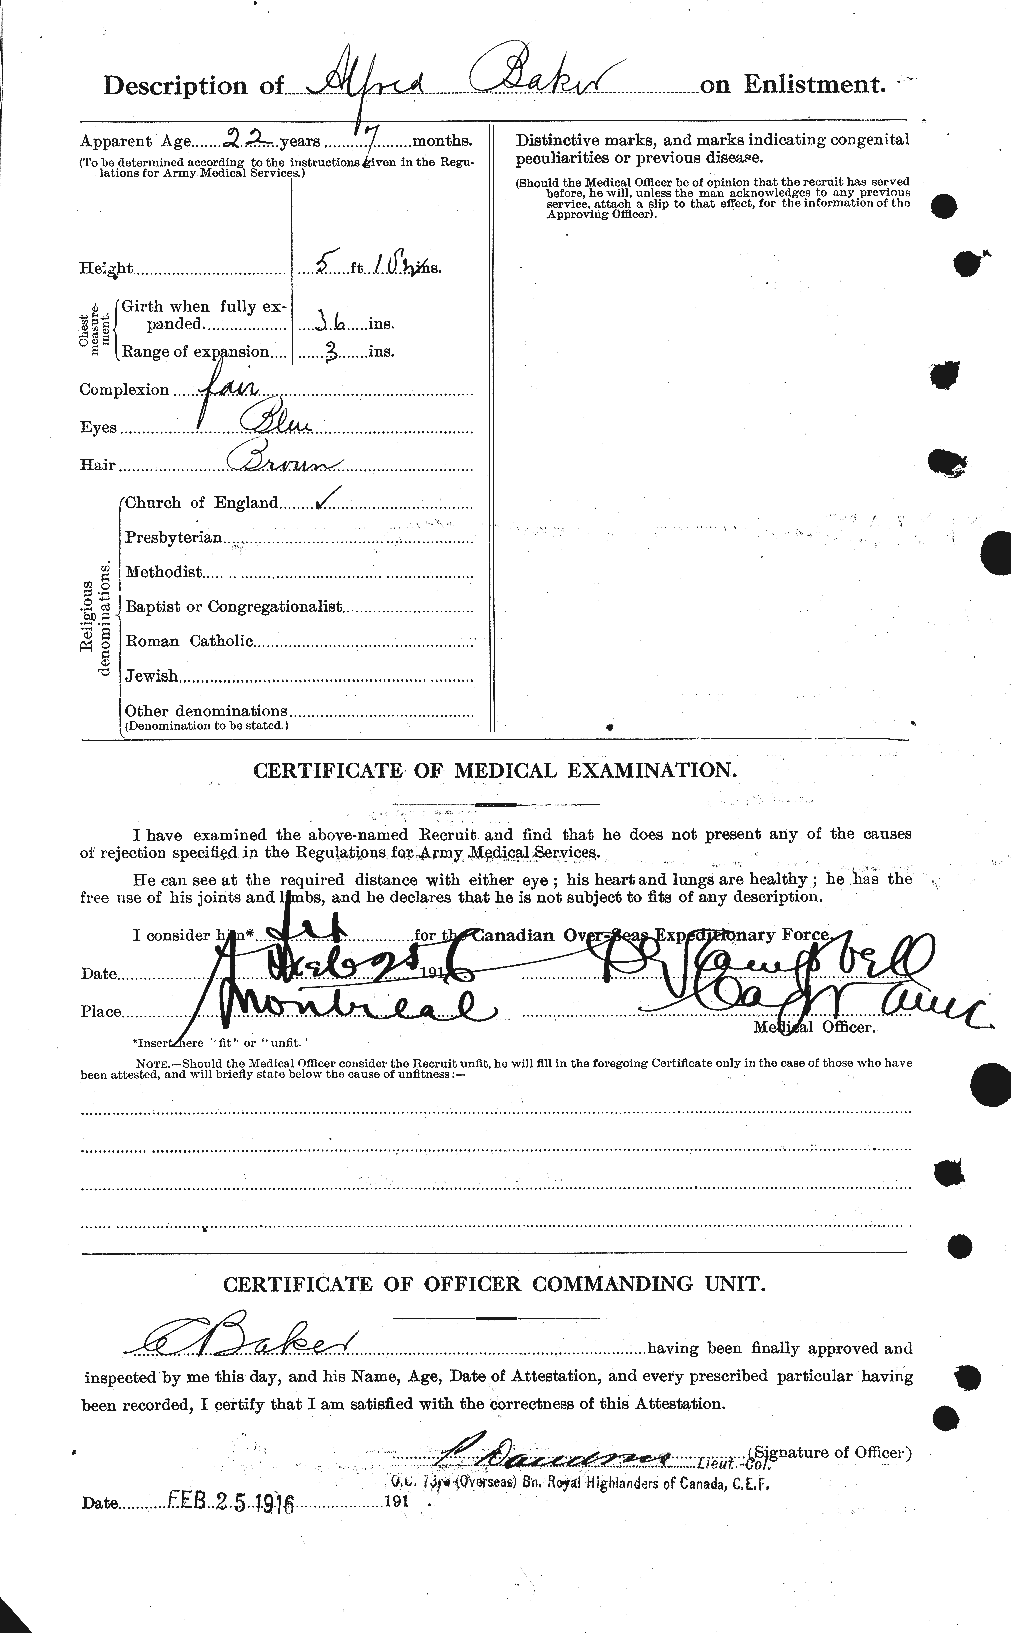 Dossiers du Personnel de la Première Guerre mondiale - CEC 226449b